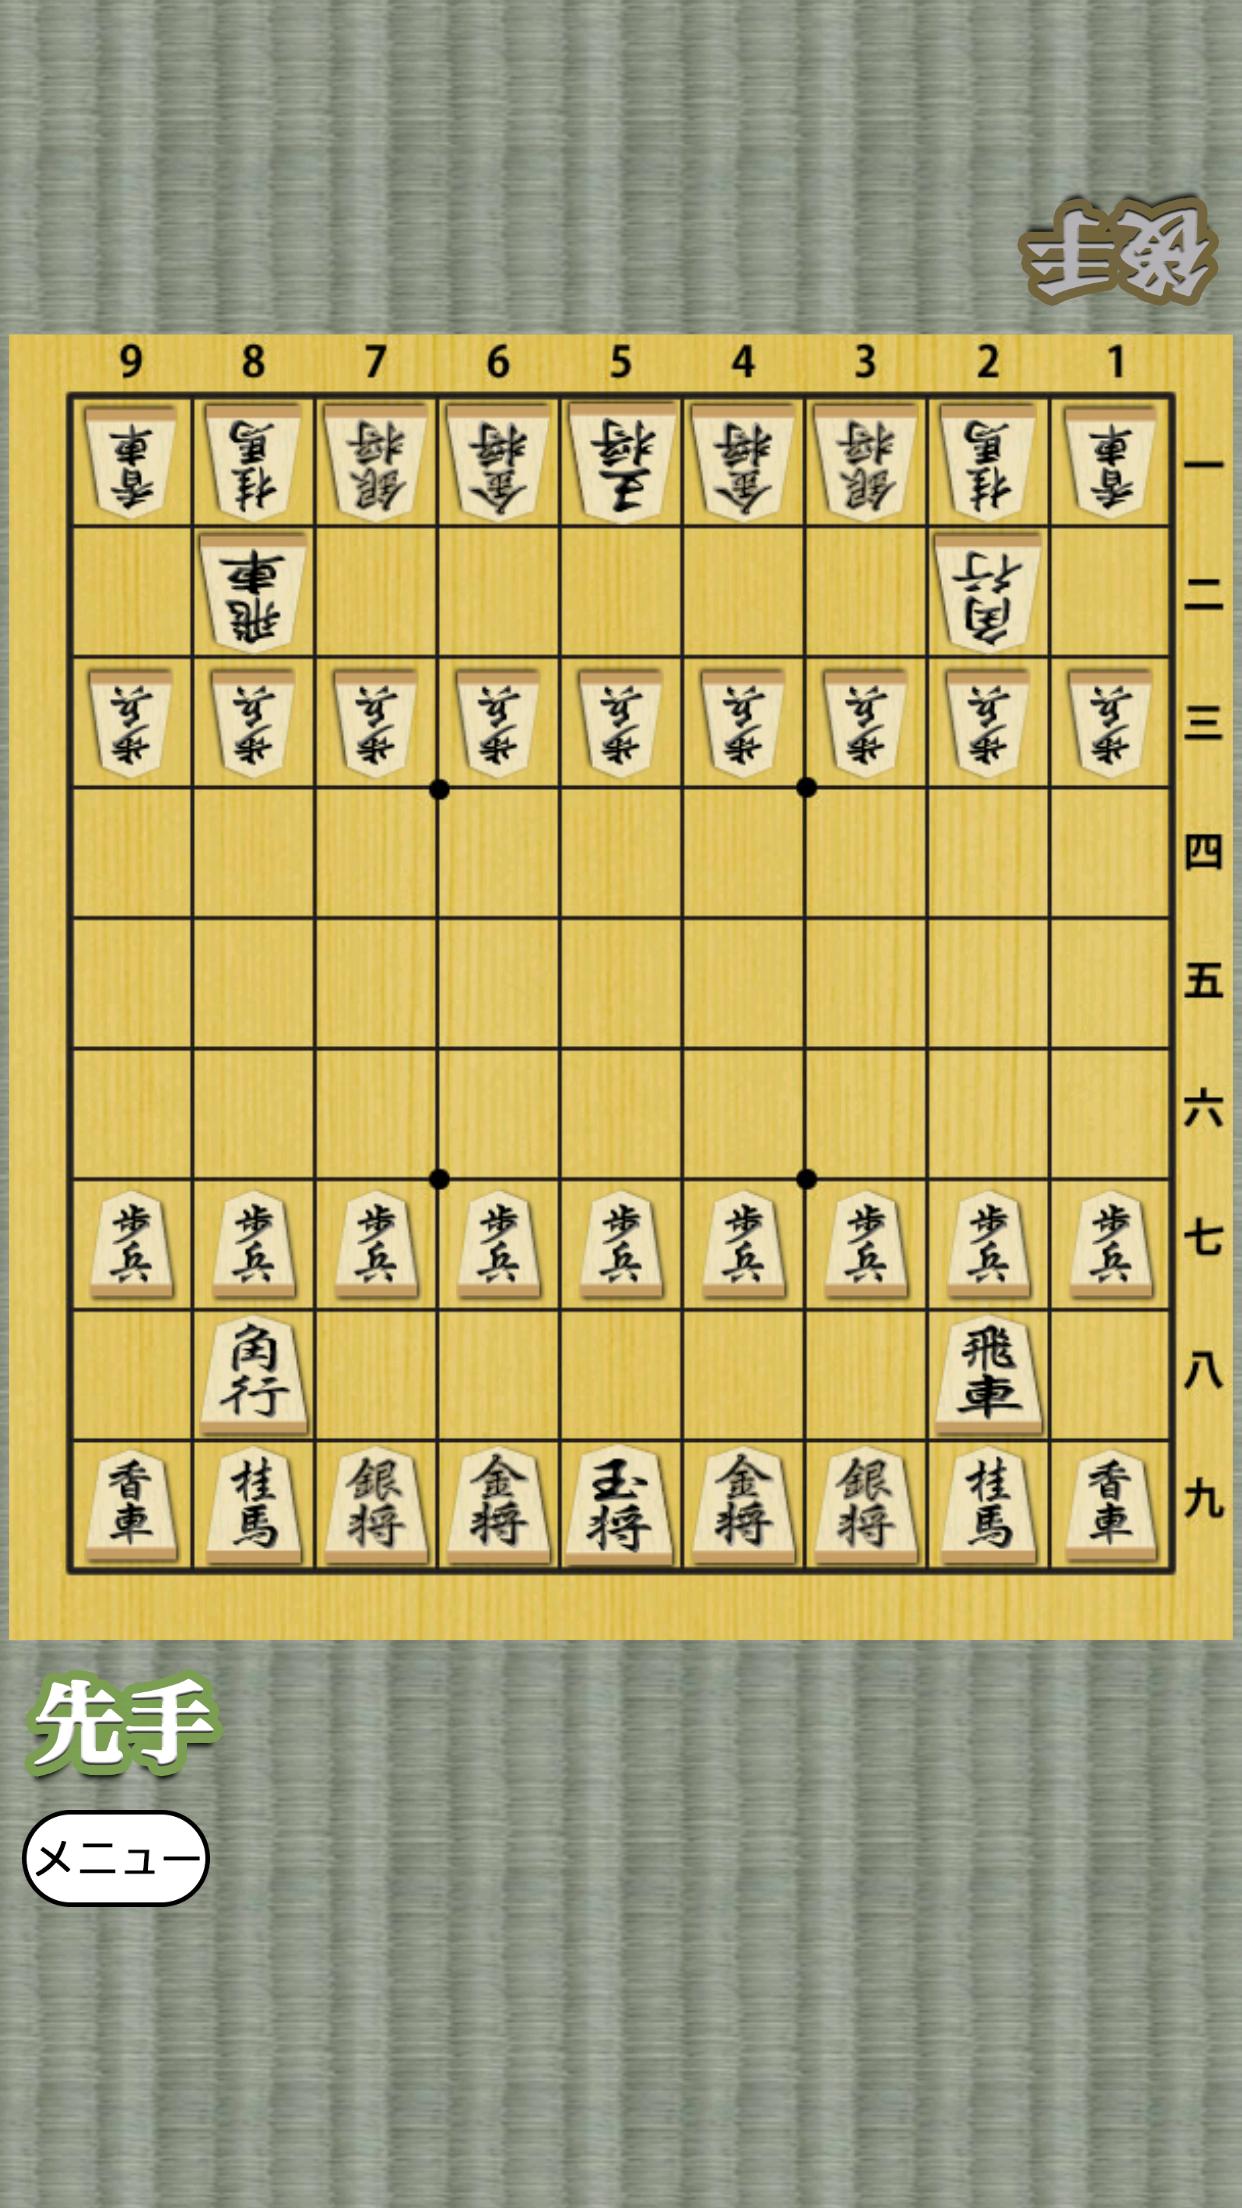 Shogi for beginners 1.0.4 Screenshot 14